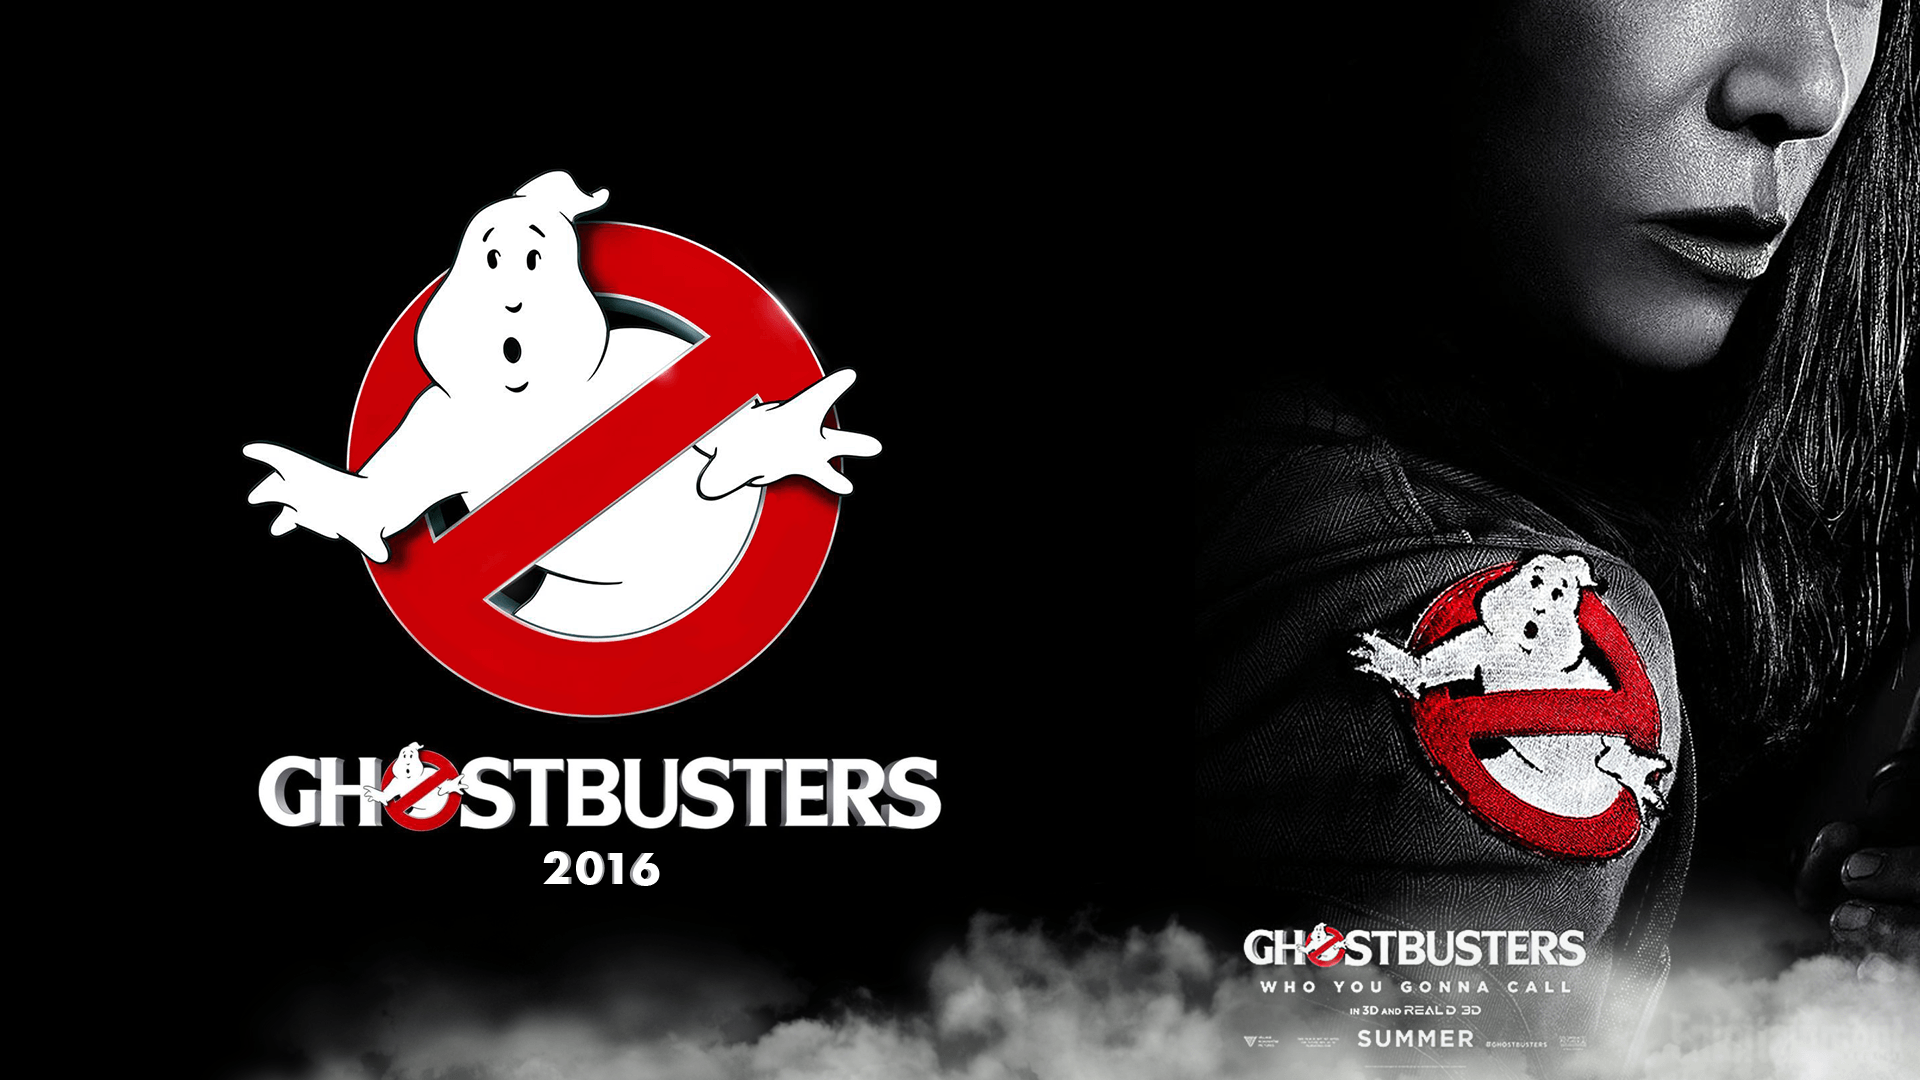 Ghostbusters 2016 wallpaper, cazafantasmas 2016 fondos